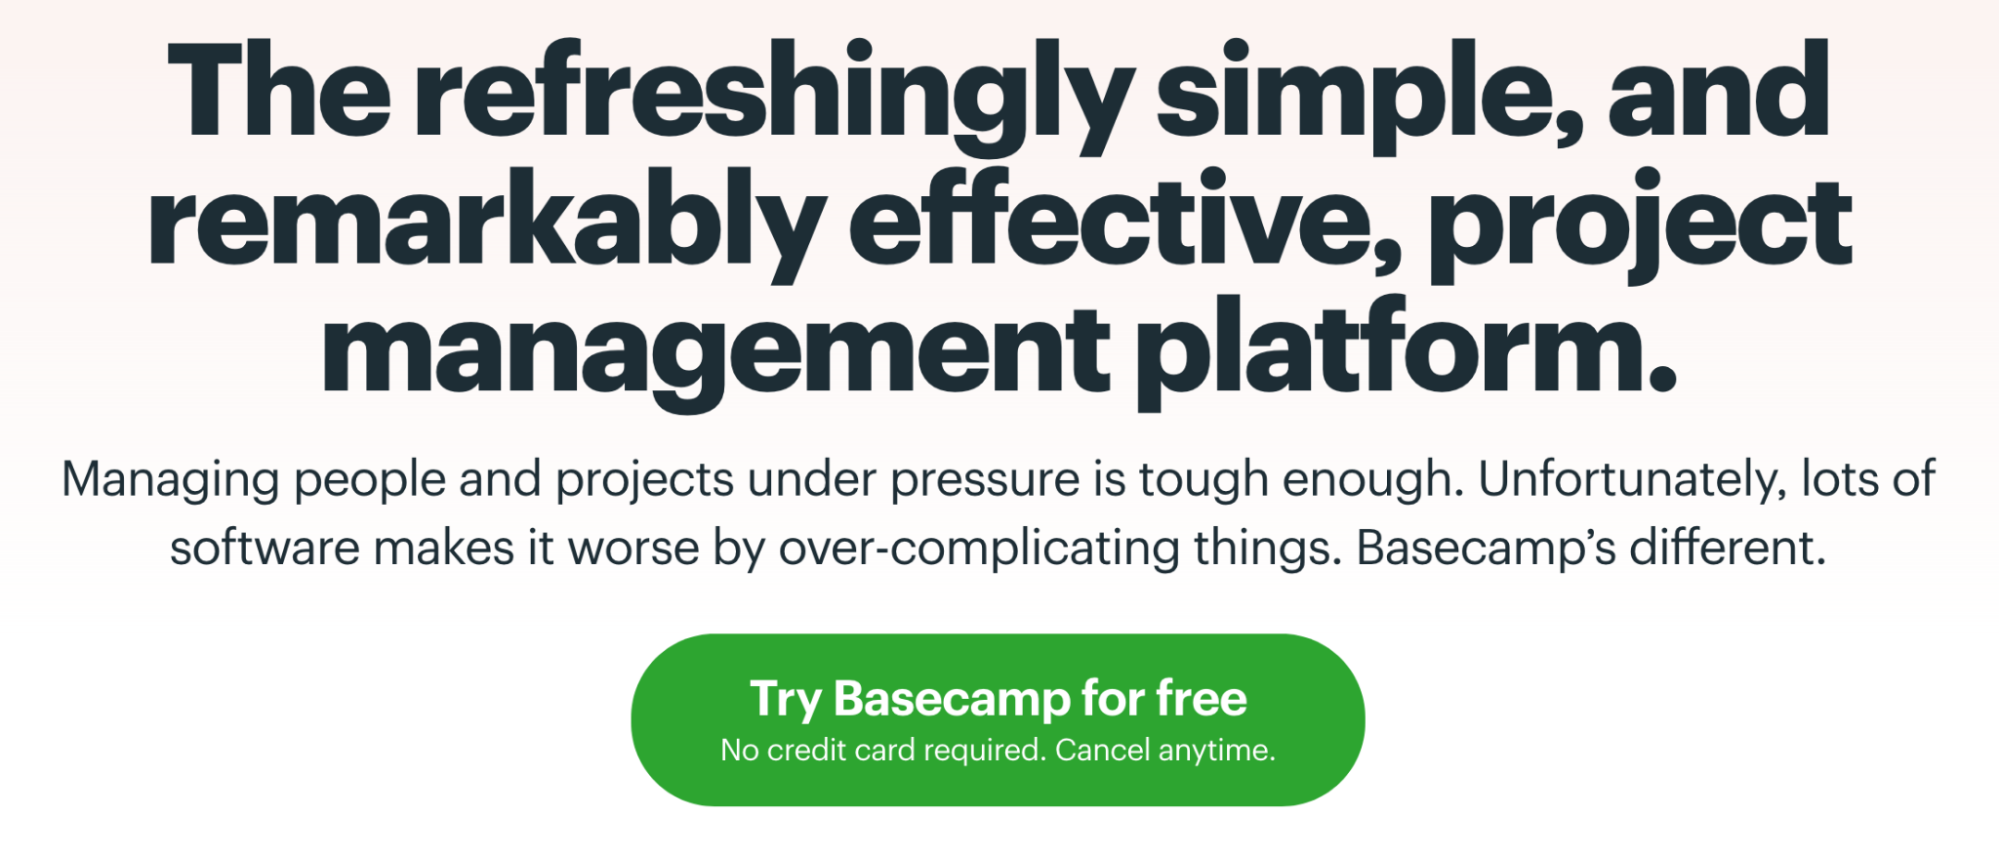 この例は、Basecamp の行動喚起ボタンの例を示しています